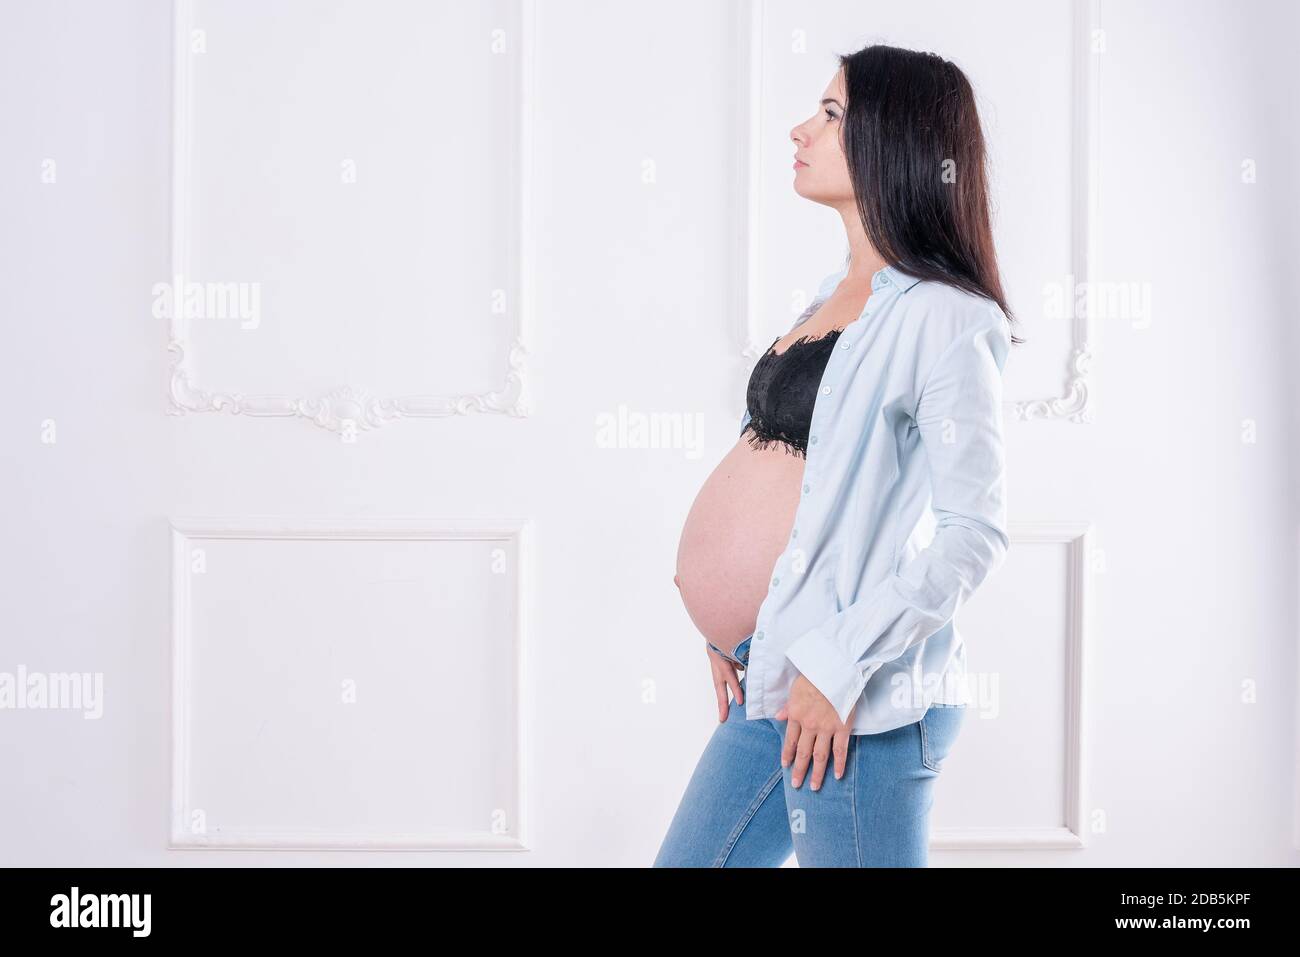 Felice ragazza incinta in jeans e camicia senza bottoni Foto Stock